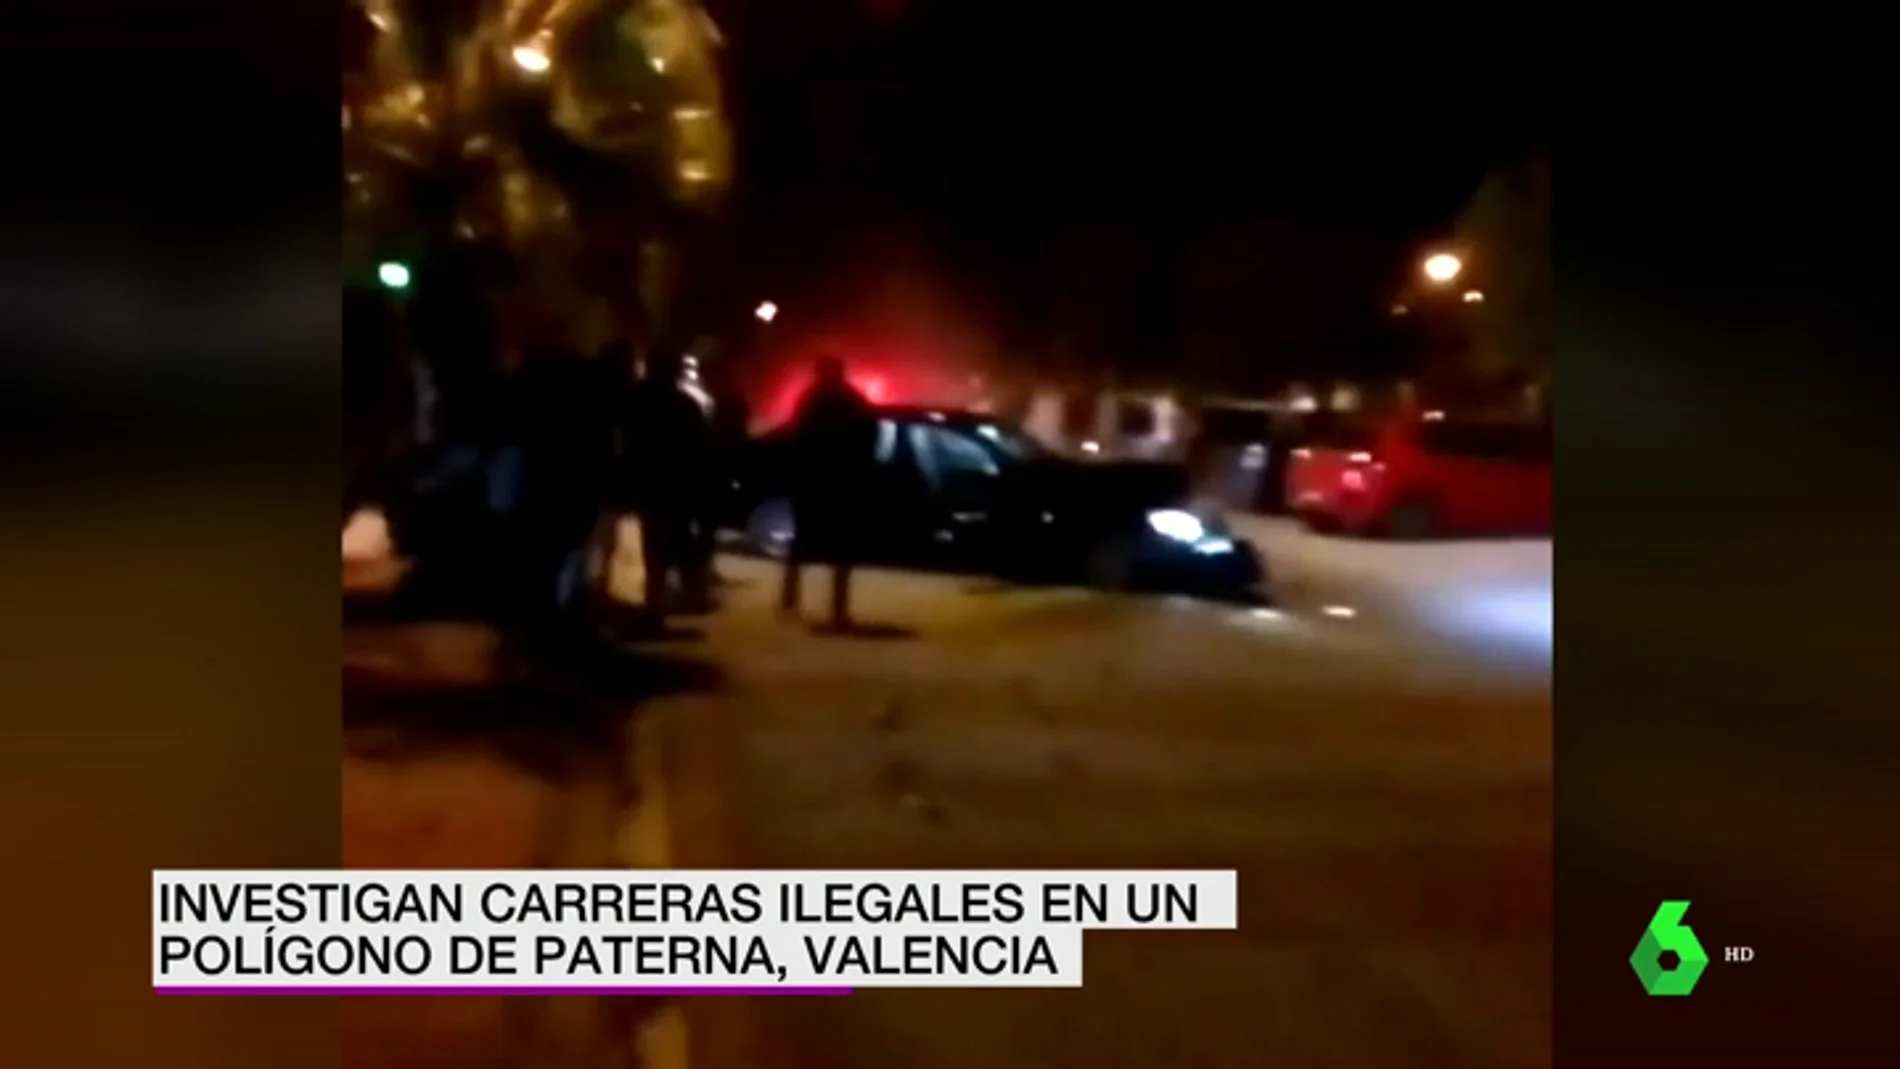 Un coche impacta brutalmente contra una palmera mientras participaba en una carrera ilegal en Paterna, Valencia